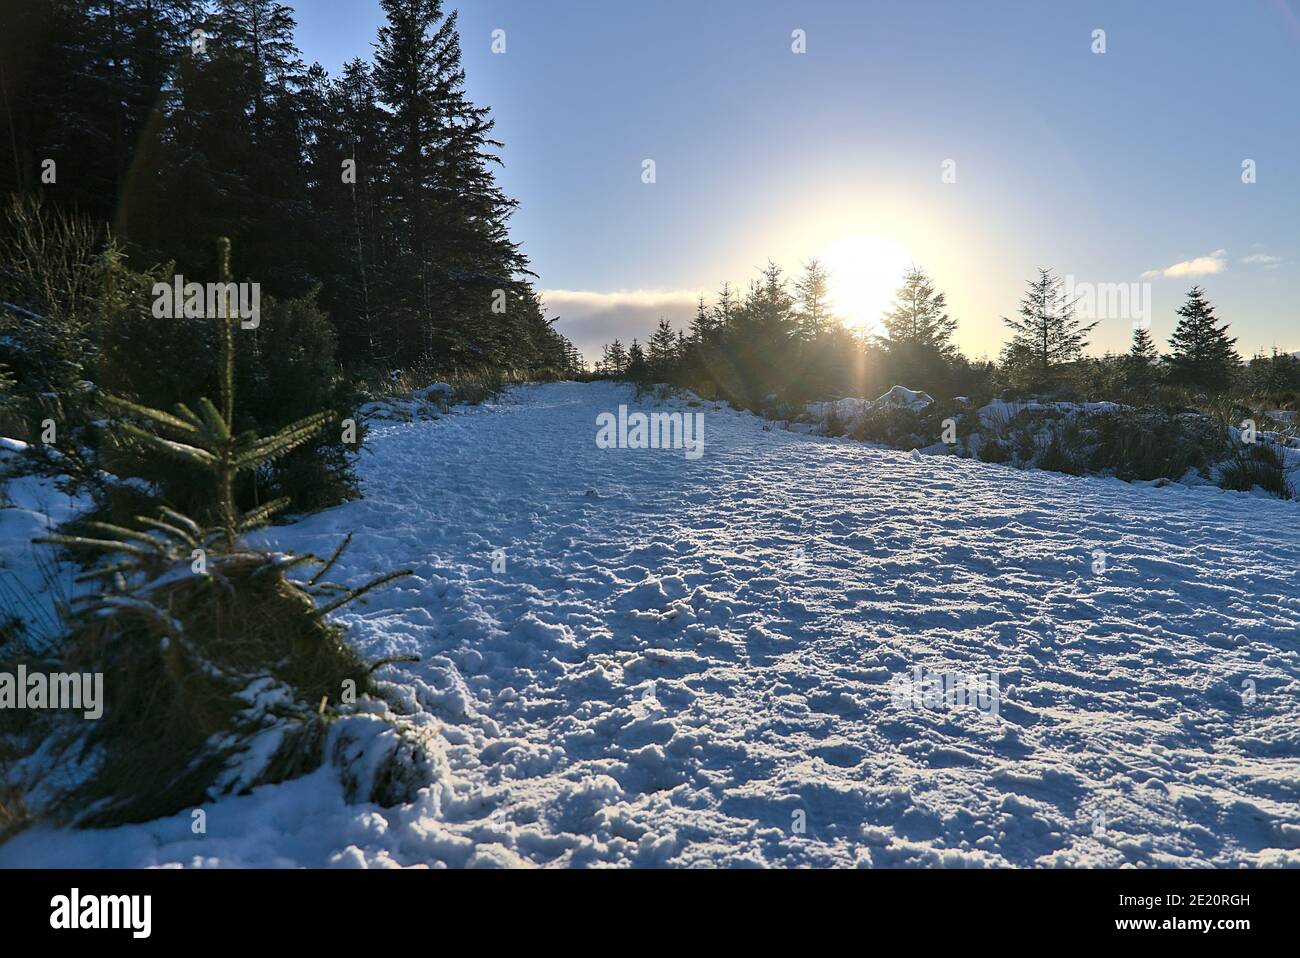 Soleil d'hiver touchant le sommet des arbres dans la forêt d'épicéa à Dublin Panoramic View point, Killakee, Co. Dublin, Irlande. Inhabituel hiver irlandais très froid 2021 Banque D'Images